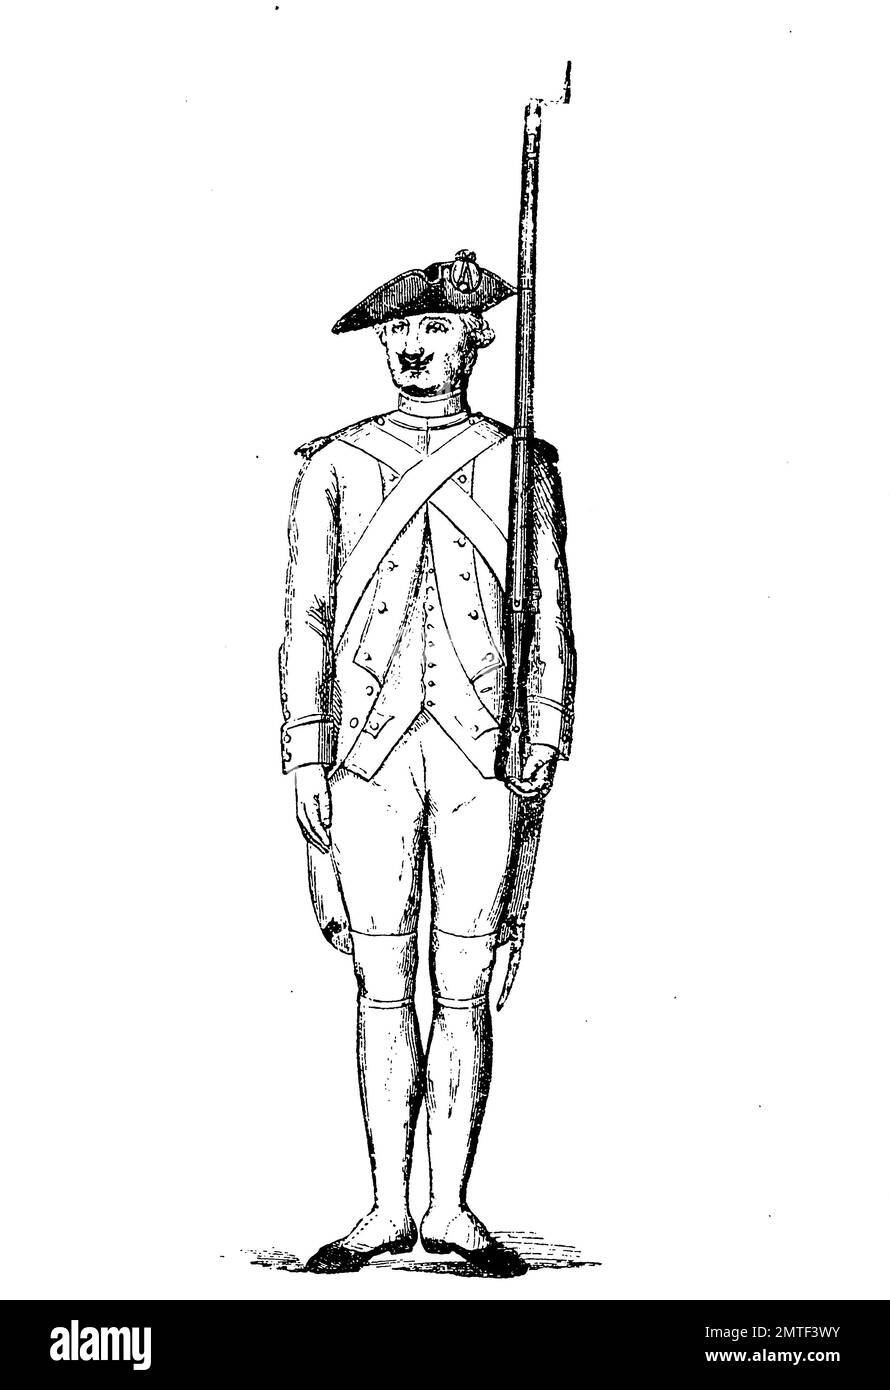 L'infanterie française de 1780, histoire de la mode, des costumes story Banque D'Images